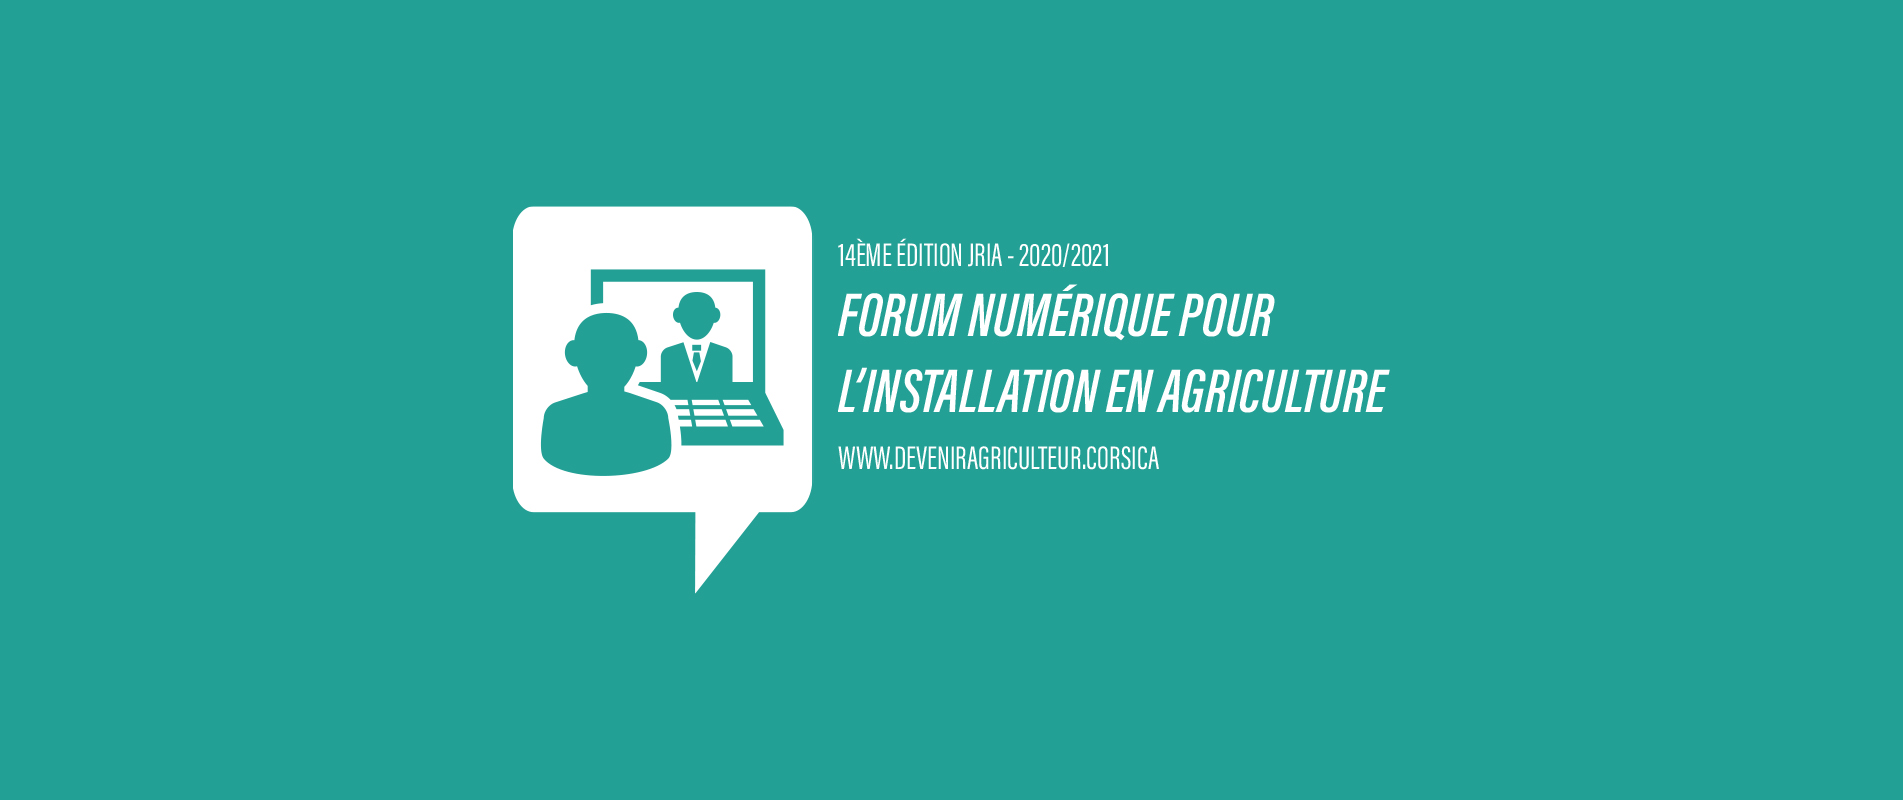 Le Forum Numérique de la 14ème Journée Régionale pour l’Installation en Agriculture 2020/2021